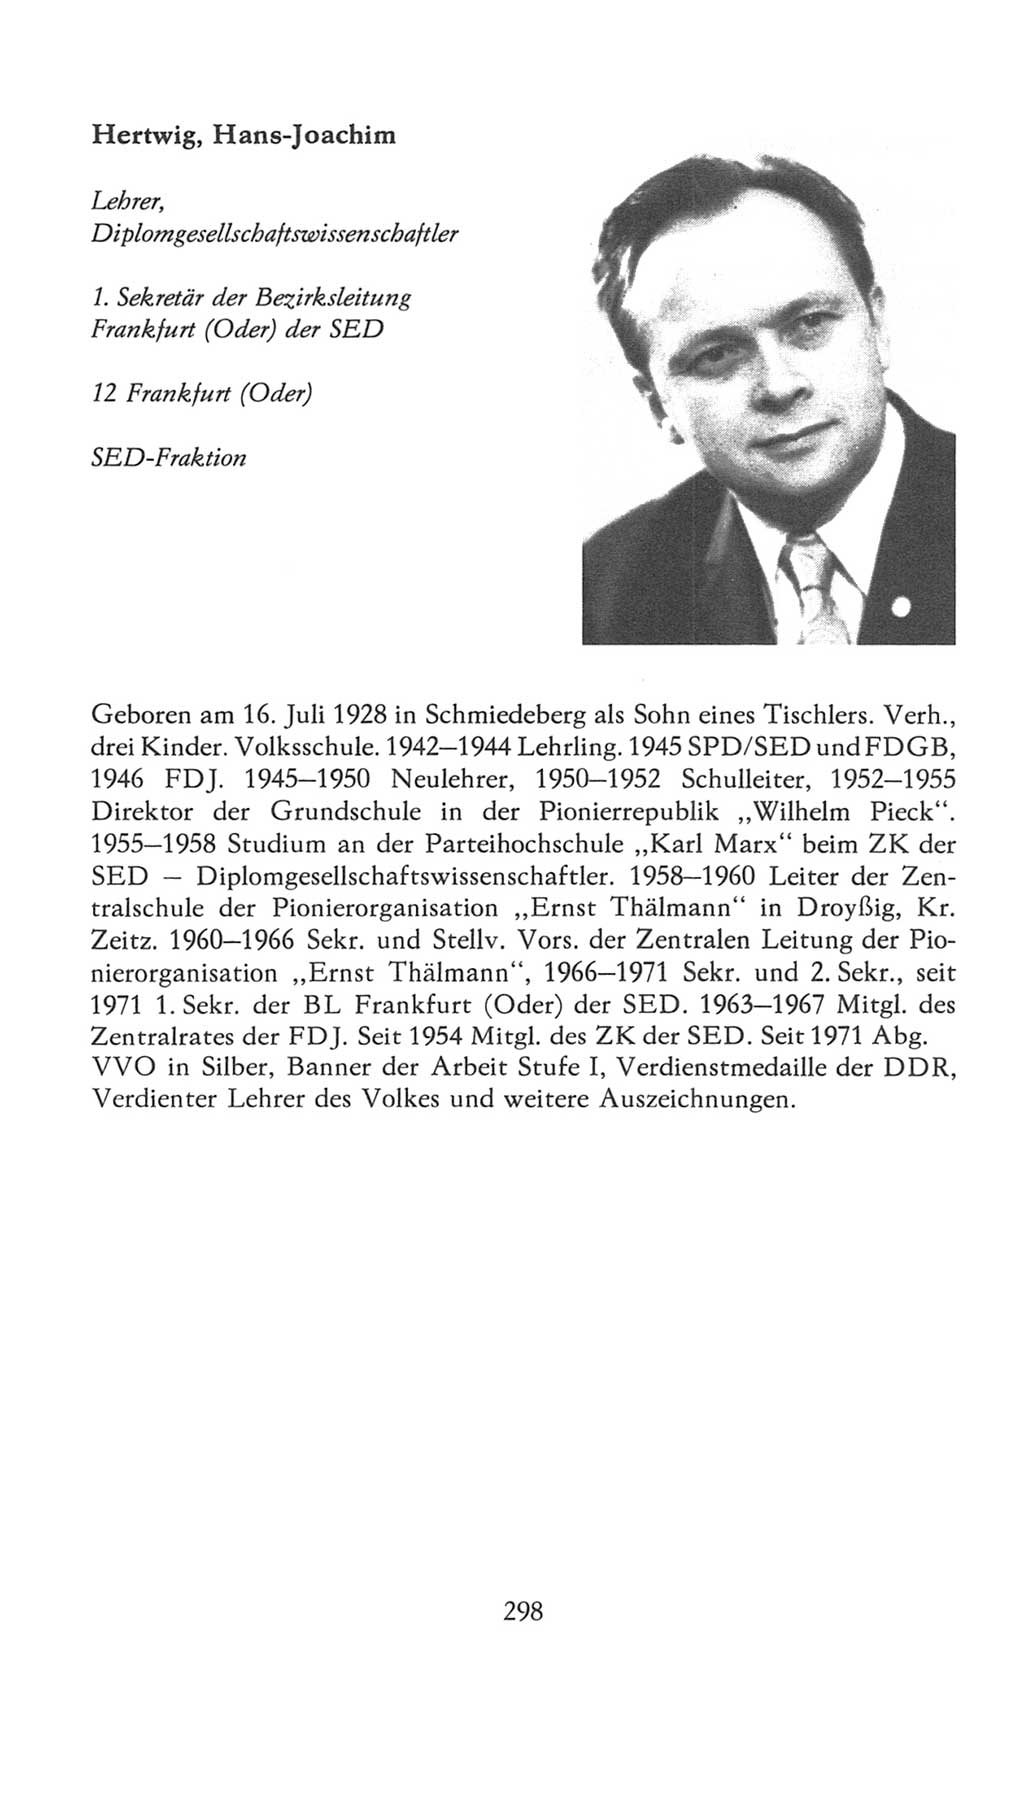 Volkskammer (VK) der Deutschen Demokratischen Republik (DDR), 7. Wahlperiode 1976-1981, Seite 298 (VK. DDR 7. WP. 1976-1981, S. 298)